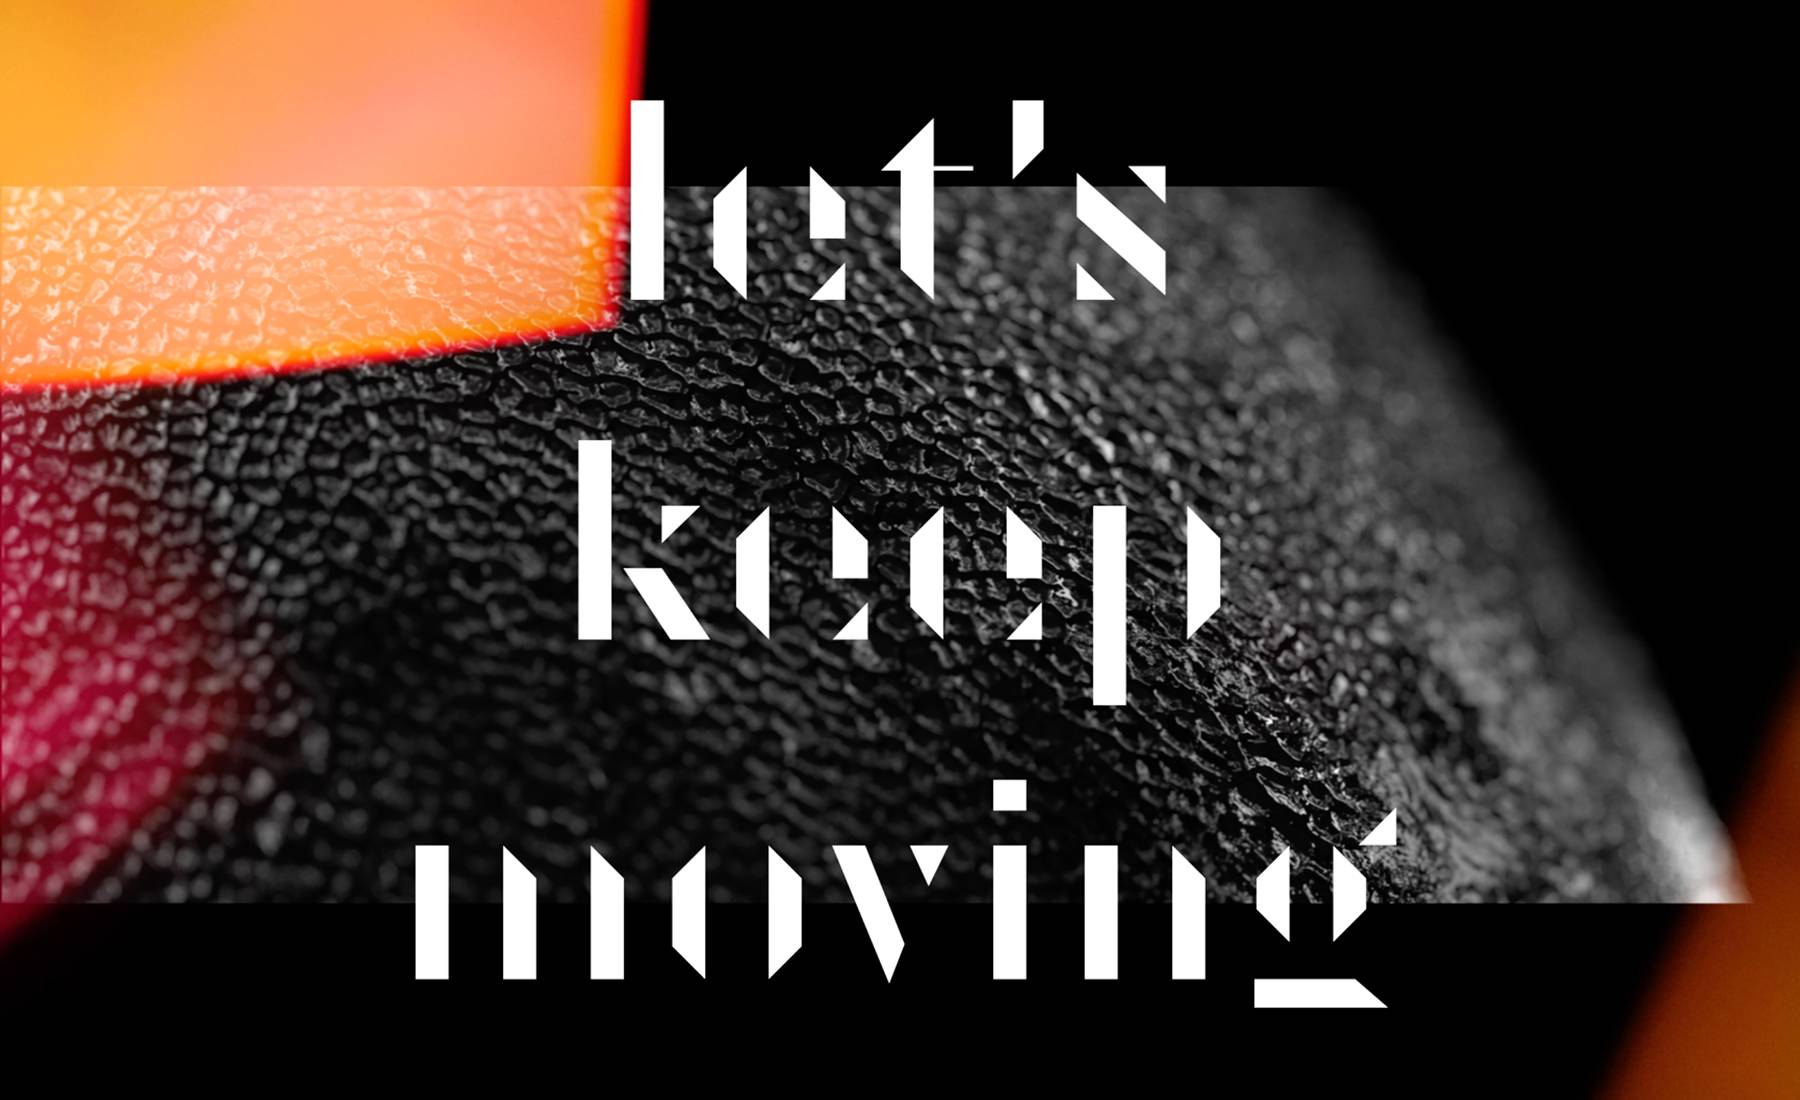 Keep moving forward. Keep on moving kastuvas feat. Emie.